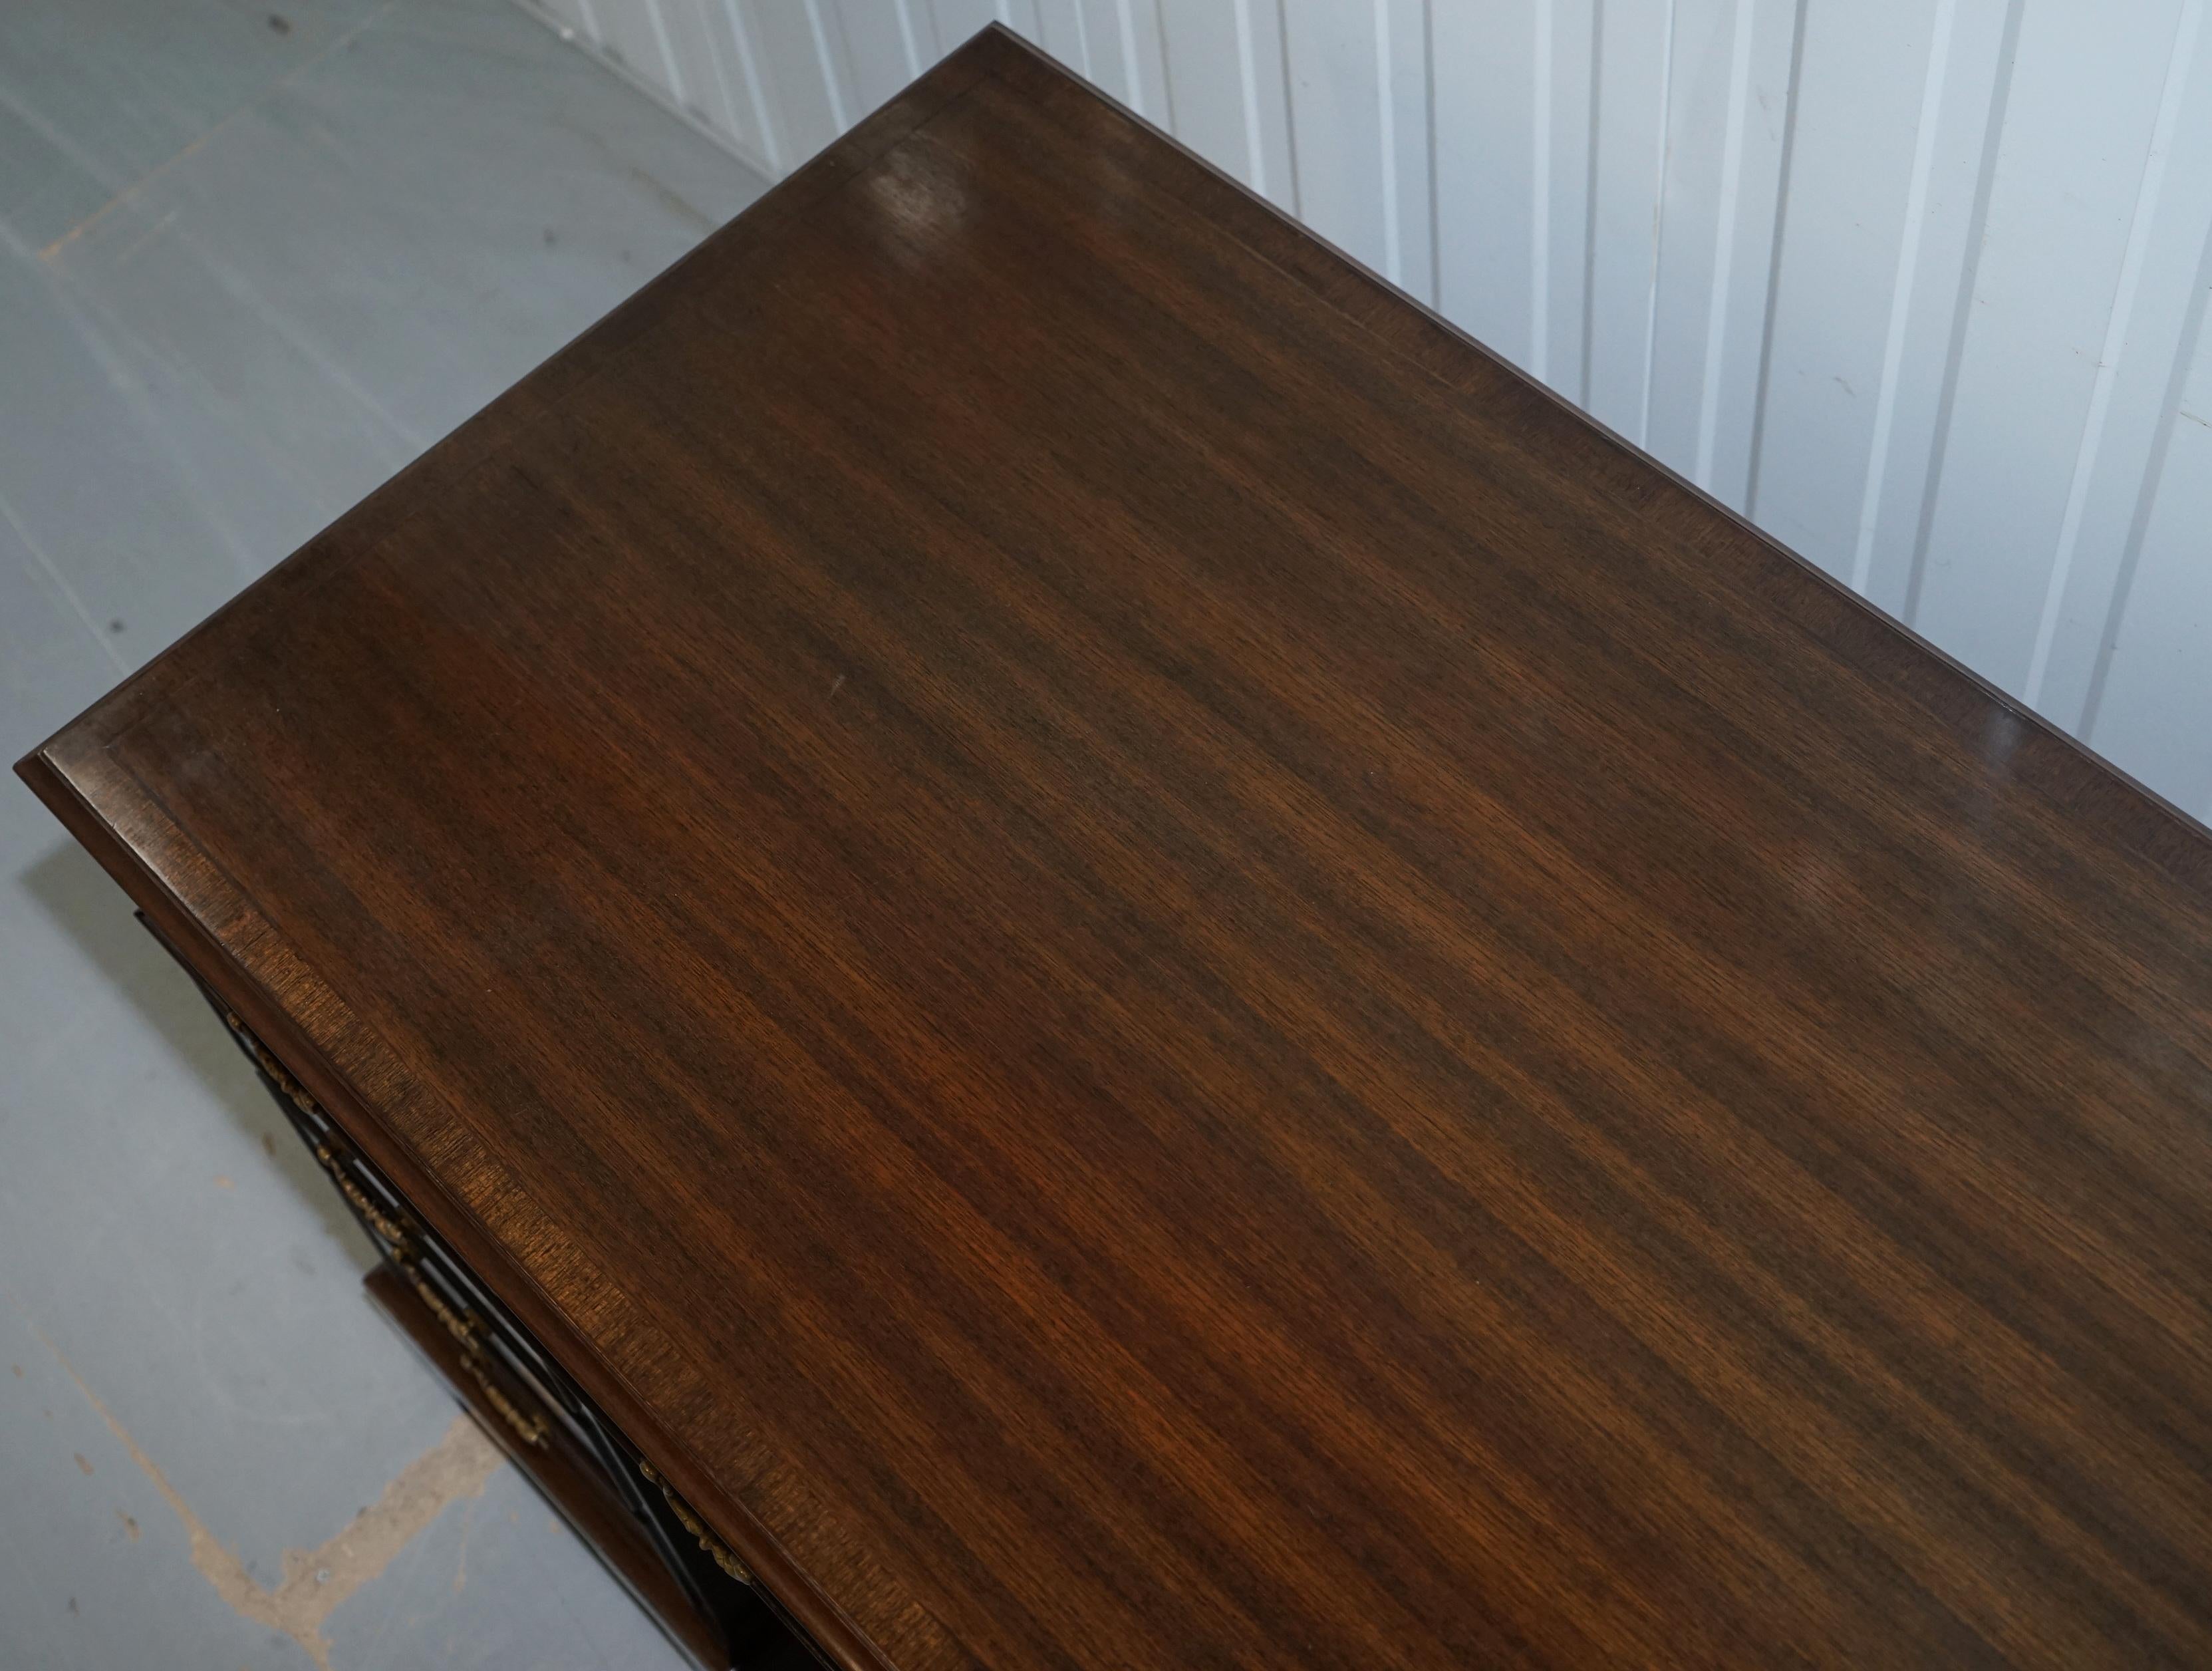 English Vintage Stunning Large Solid Hardwood Twin Pedestal Partner Desk Rare Find